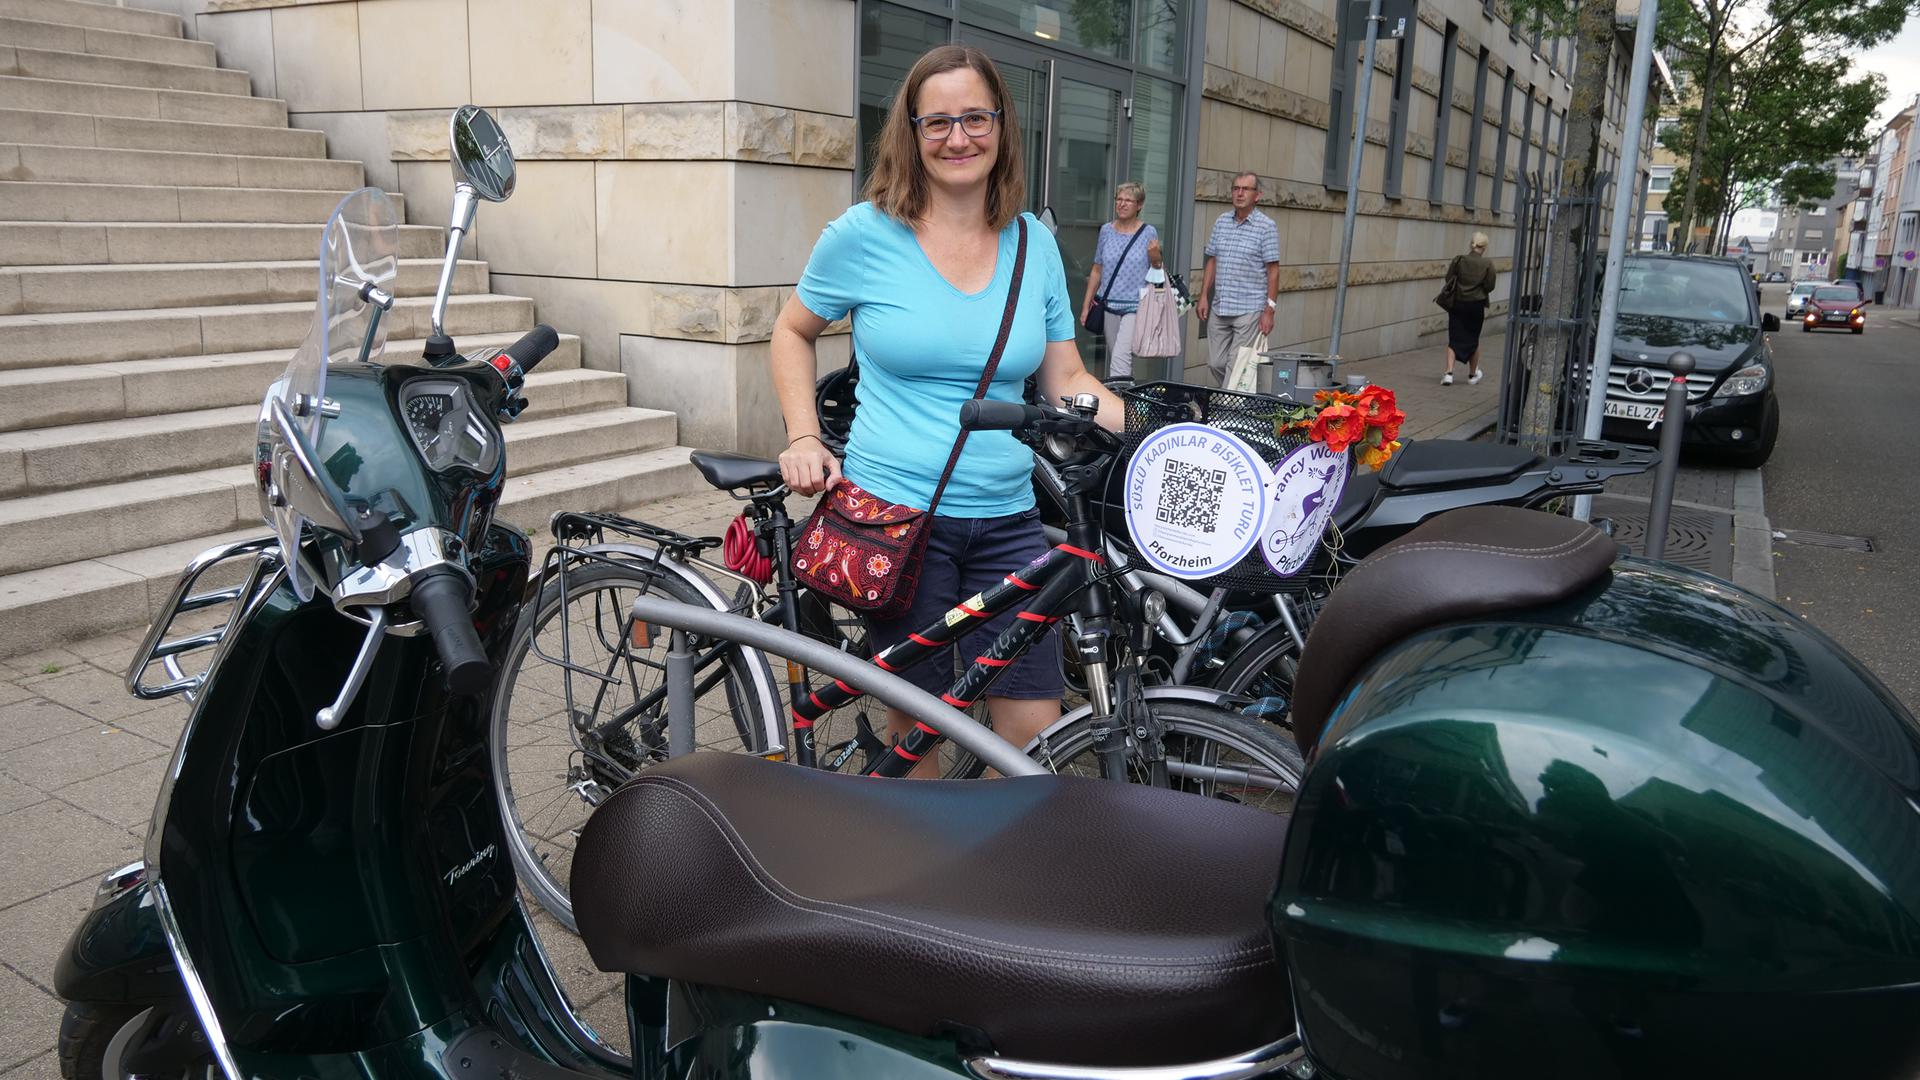 Kirstin Heissenberger weiß aus eigener Erfahrung um das Problem, wenn motorisierte Zweiräder auf Stellflächen parken, die eigentlich für Radfahrer vorgesehen sind. Erlaubt ist das nämlich nicht. Wird es geahndet, kostet das Knöllchen 25 Euro.